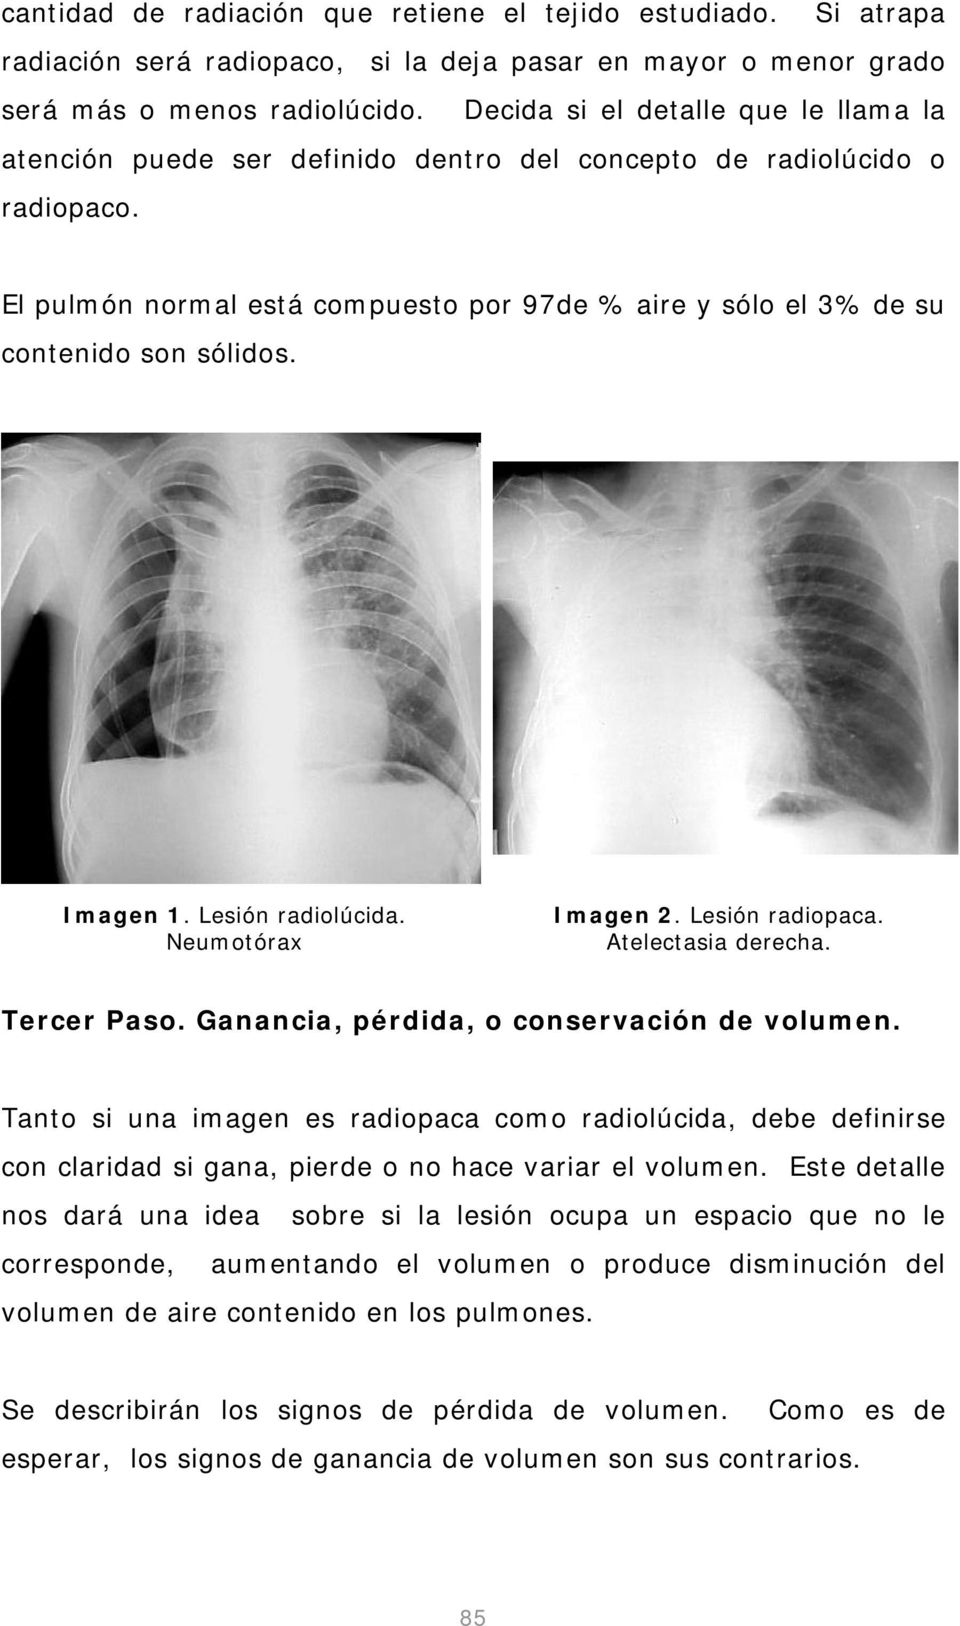 El pulmón normal está compuesto por 97de % aire y sólo el 3% de su contenido son sólidos. Imagen 1. Lesión radiolúcida. Neumotórax Imagen 2. Lesión radiopaca. Atelectasia derecha. Tercer Paso.